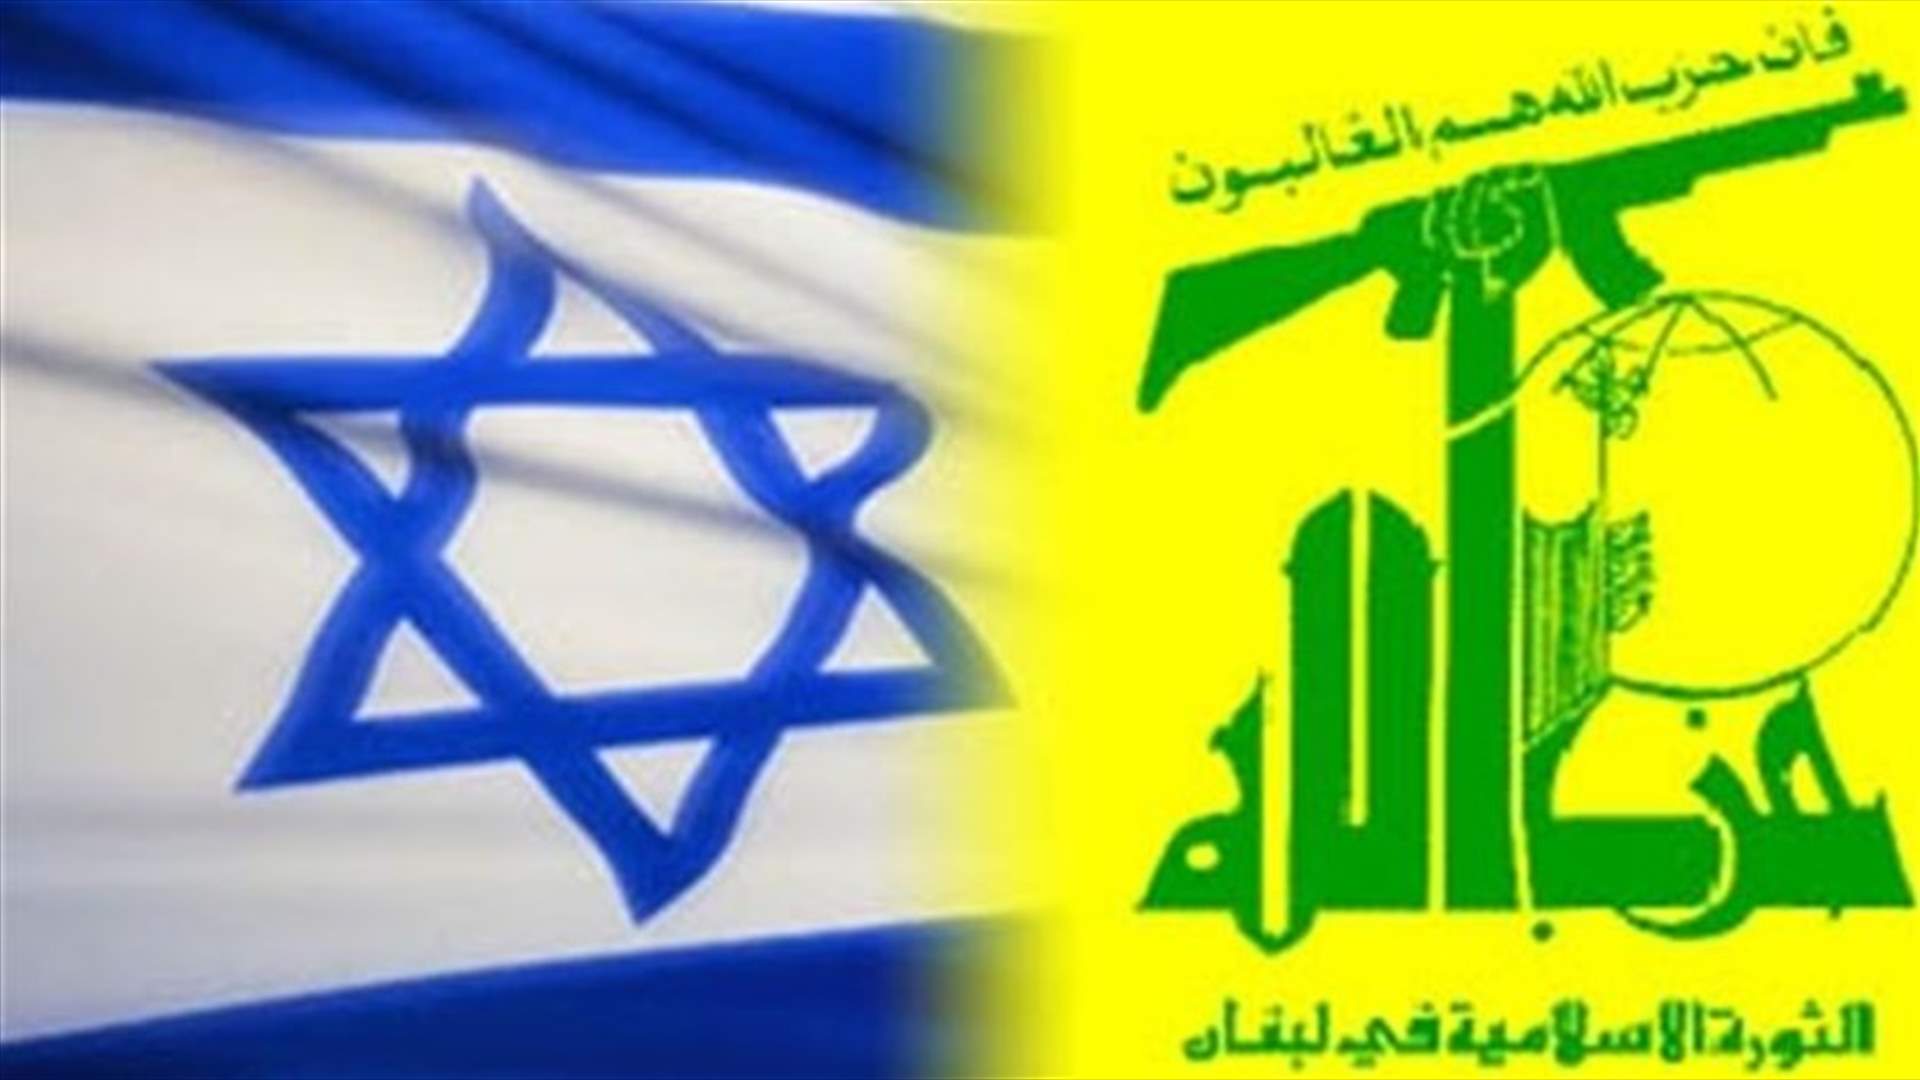 إسرائيل تتوقع سقوط مئات القتلى المدنيين بأي حرب مقبلة مع حزب الله